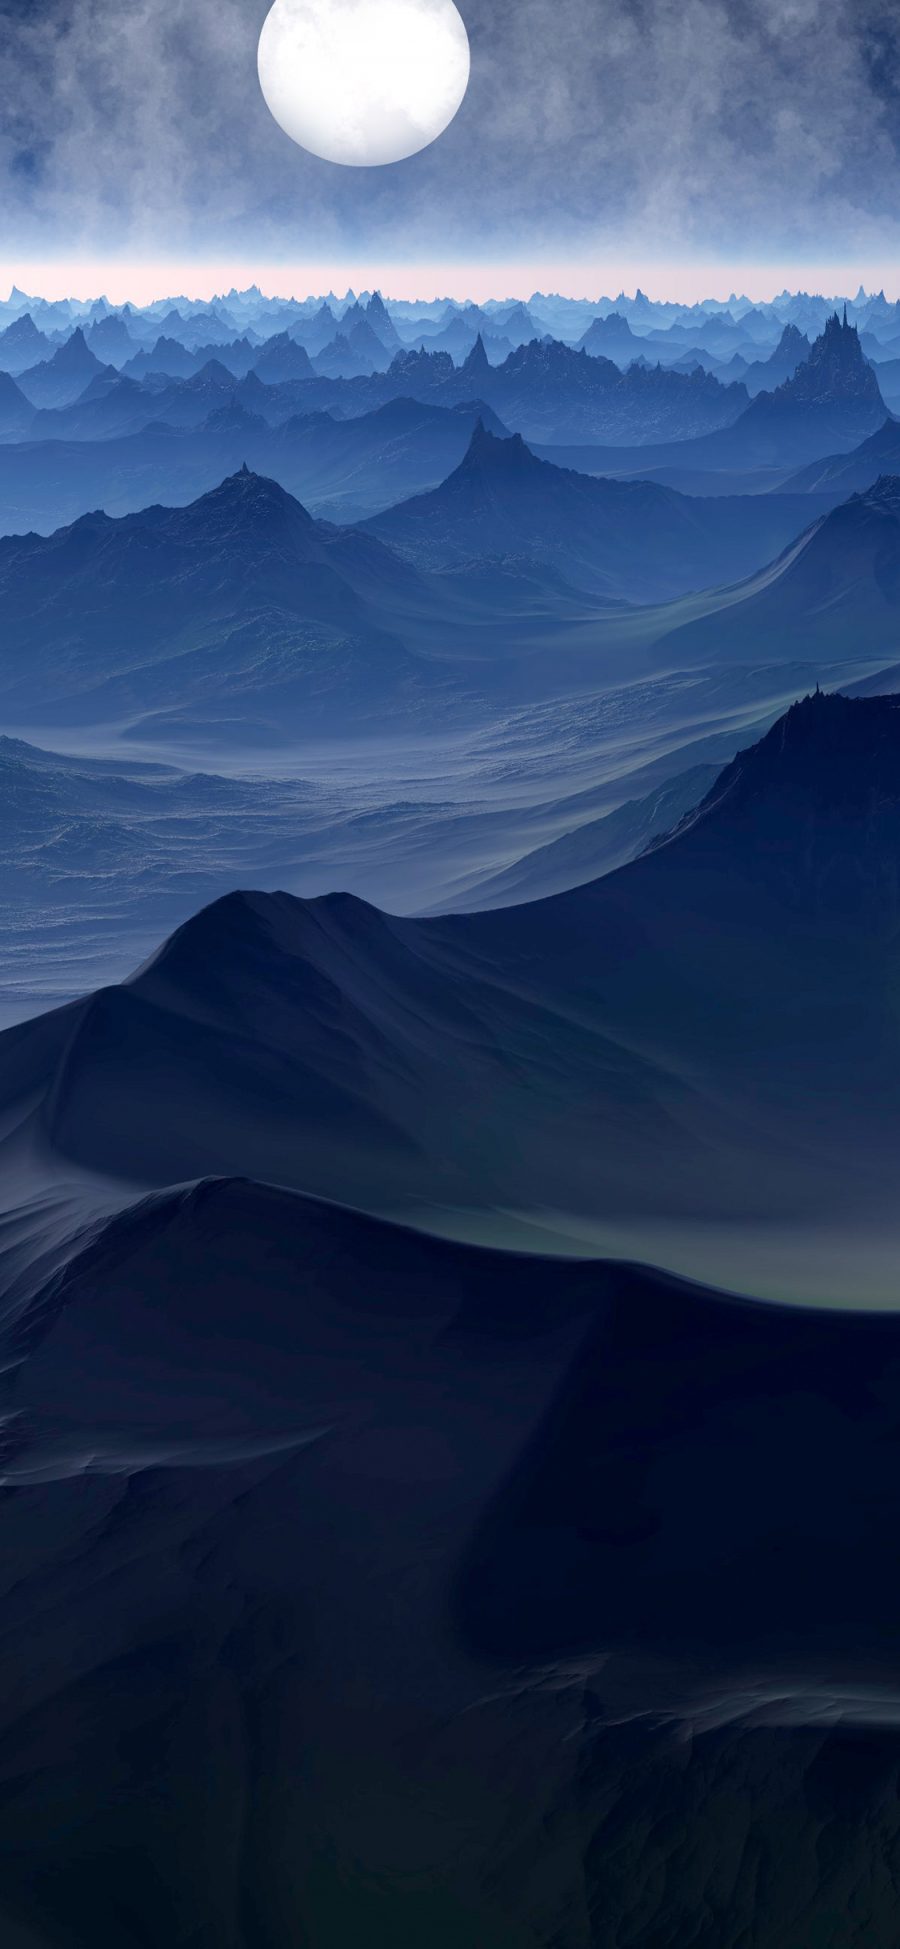 [2436×1125]山川 山脉 月亮 夜 大自然 苹果手机壁纸图片